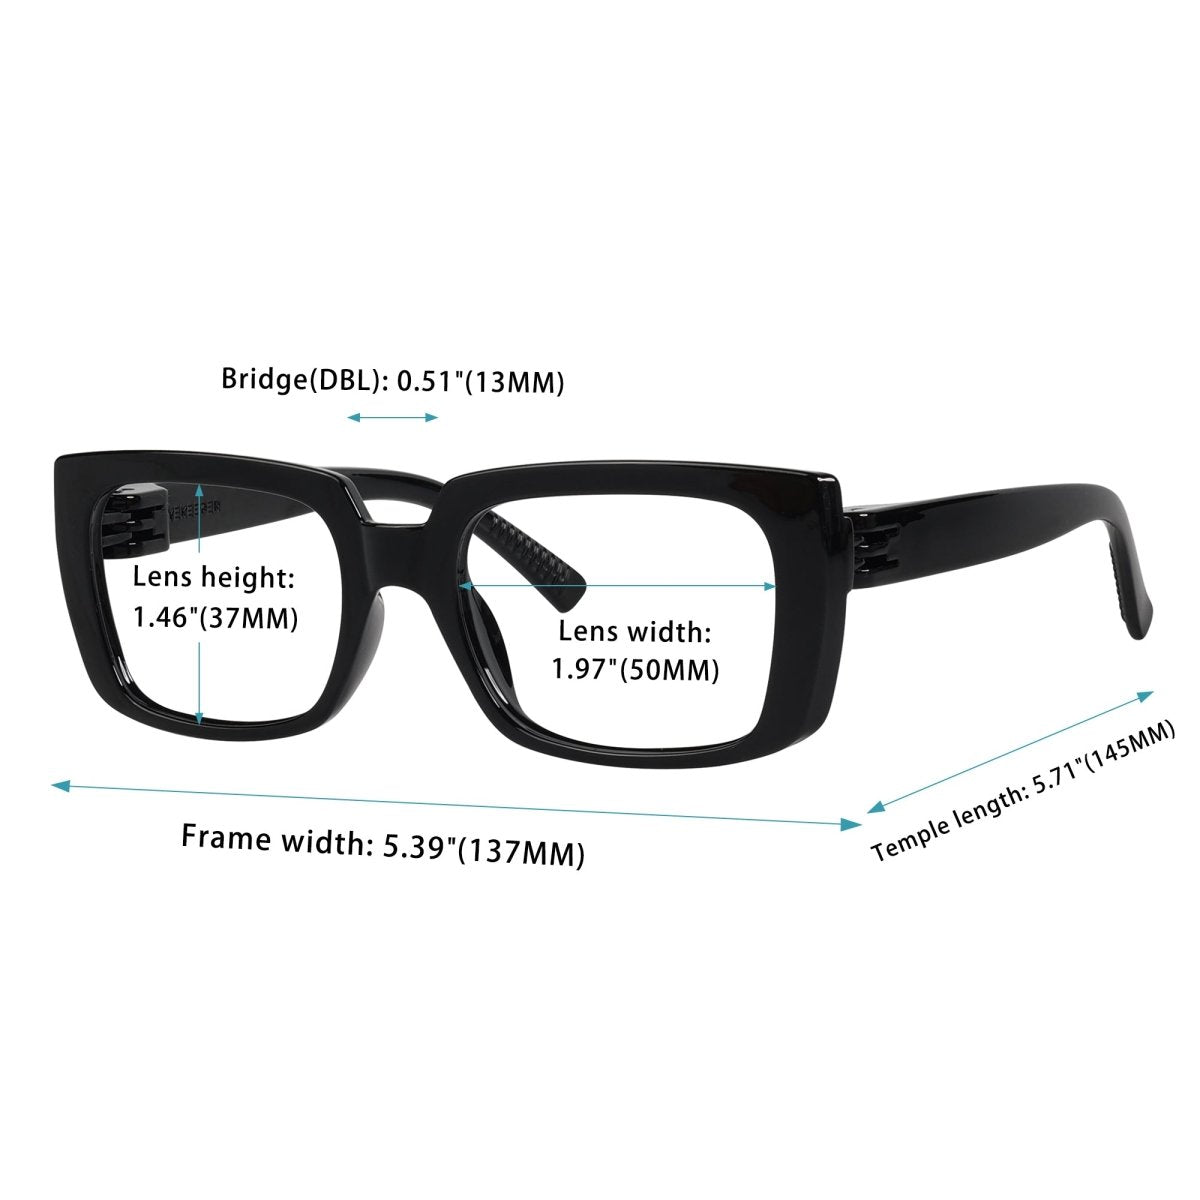 6 Pack 30% Blue Light Blocking Metalless Screwless Eyeglasses NR9107 - B15eyekeeper.com